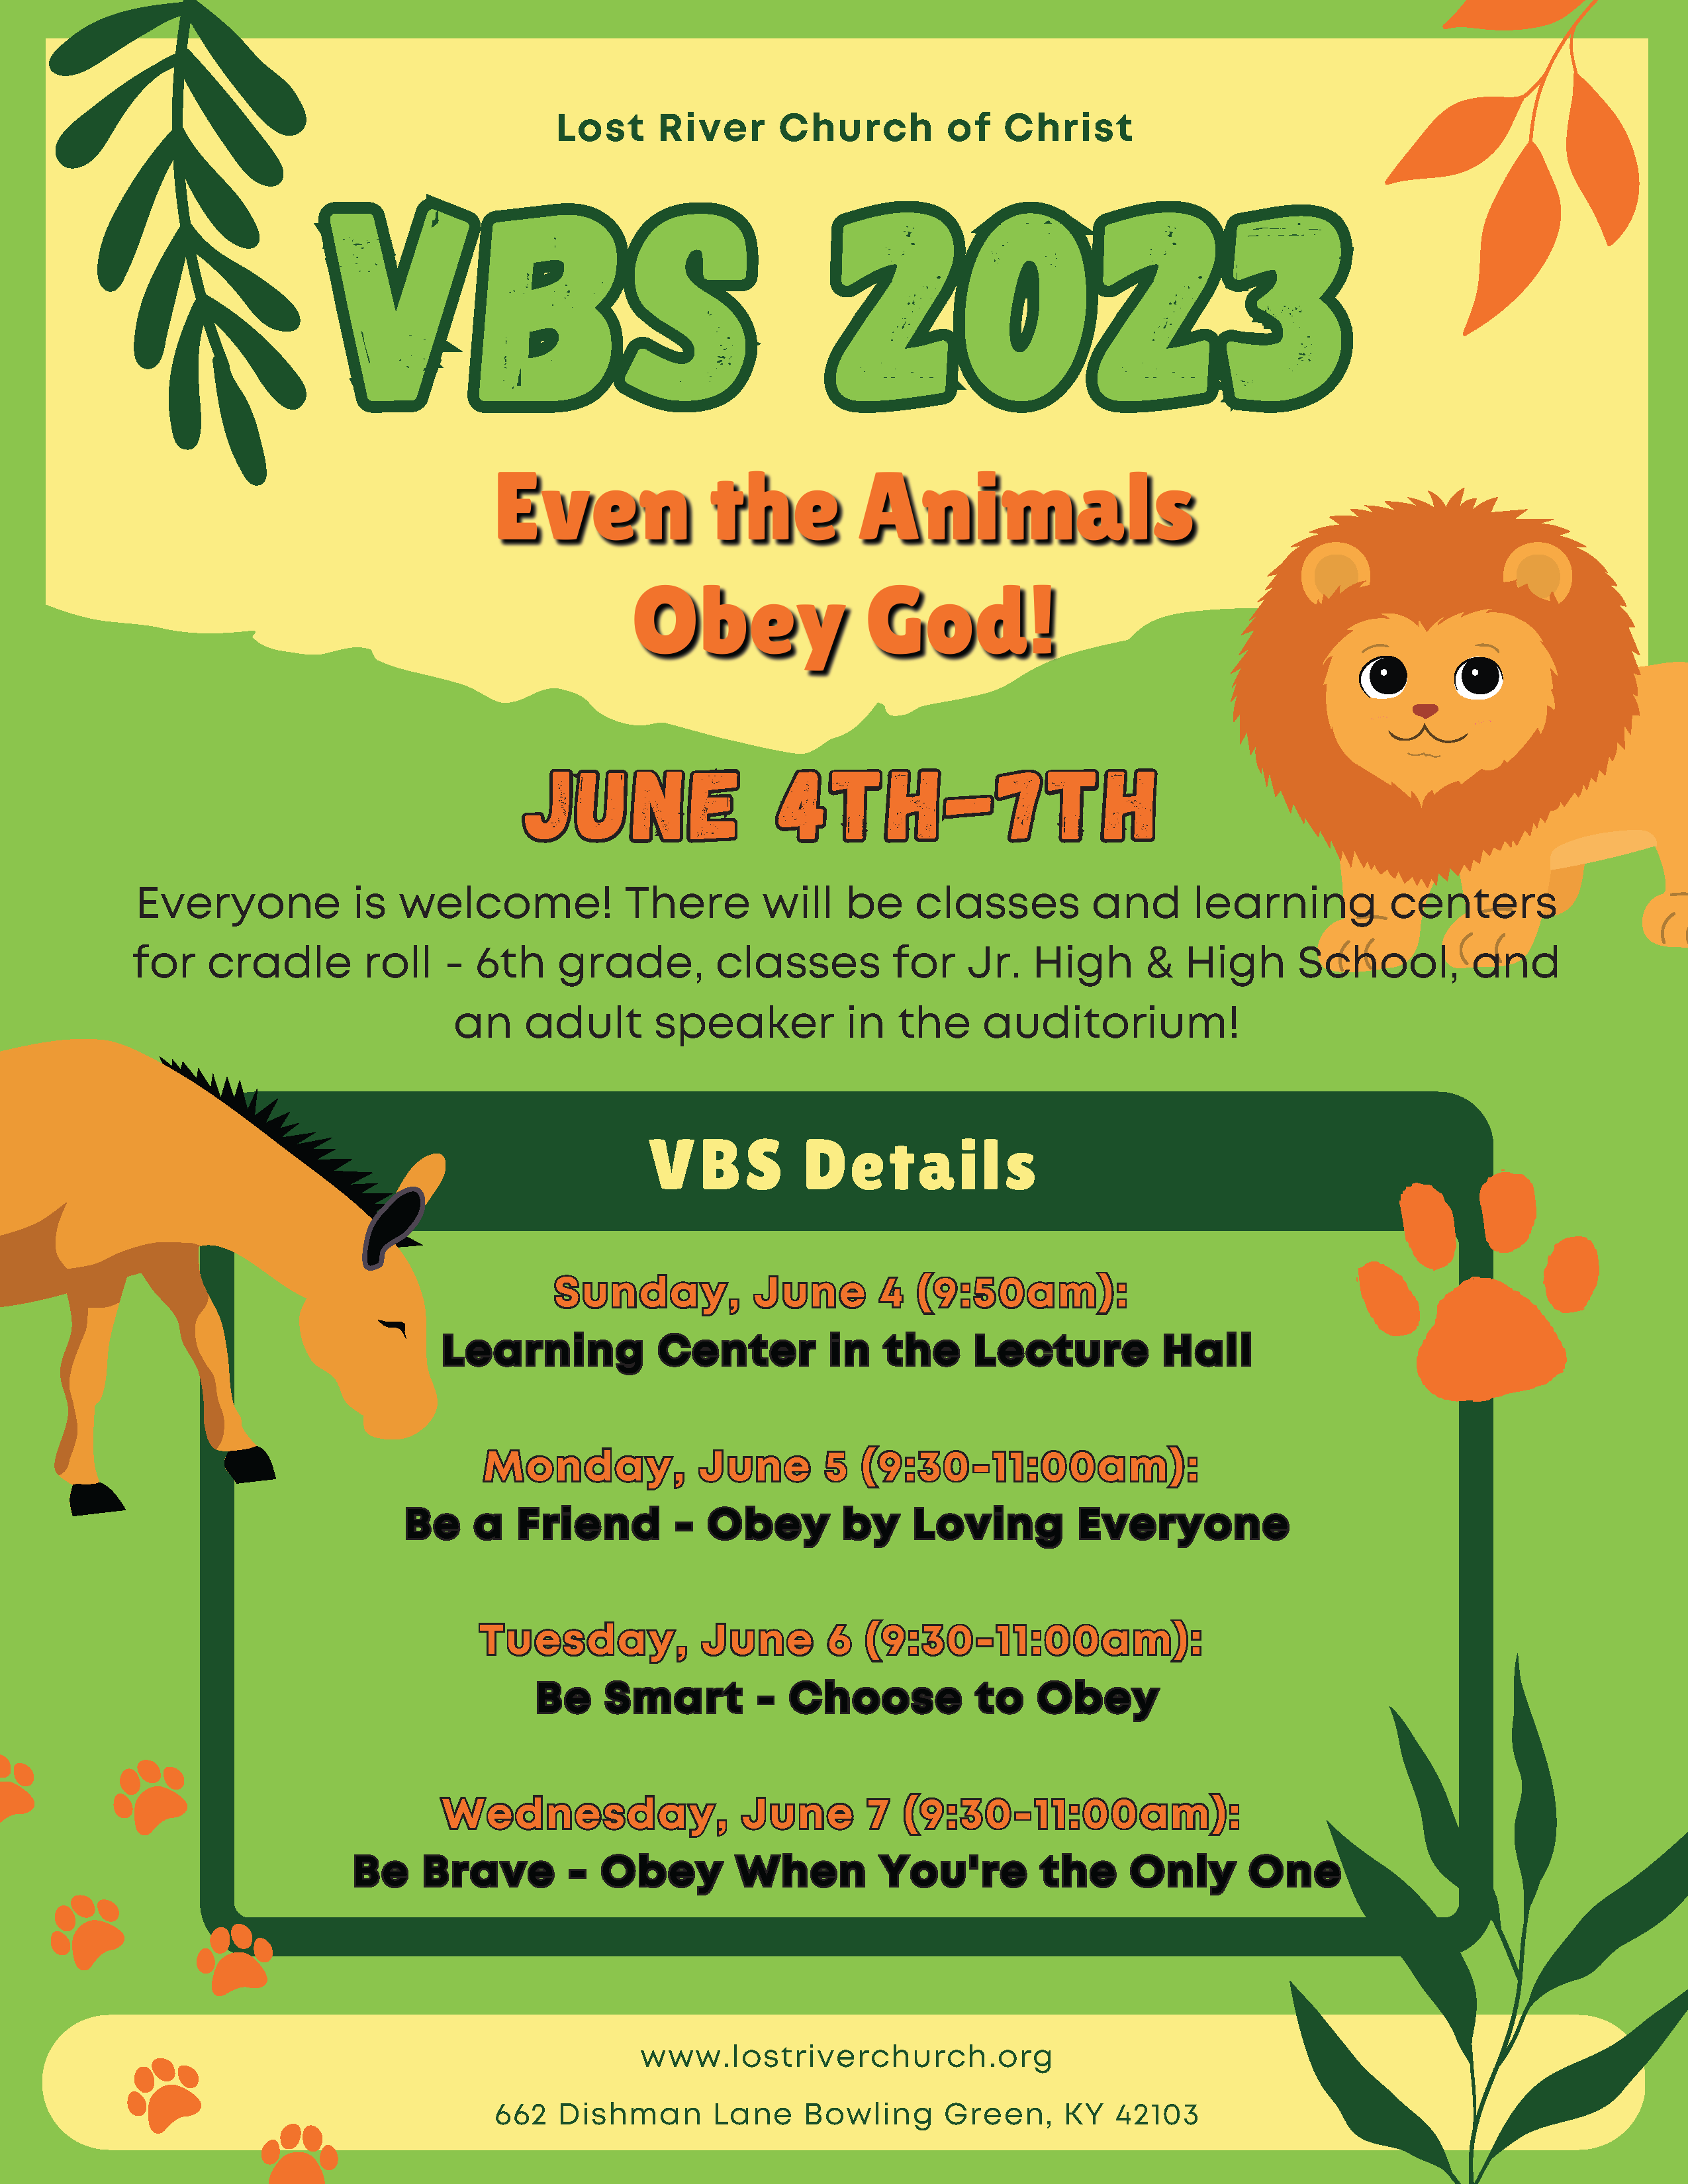 VBS 2023 at Lost River Church